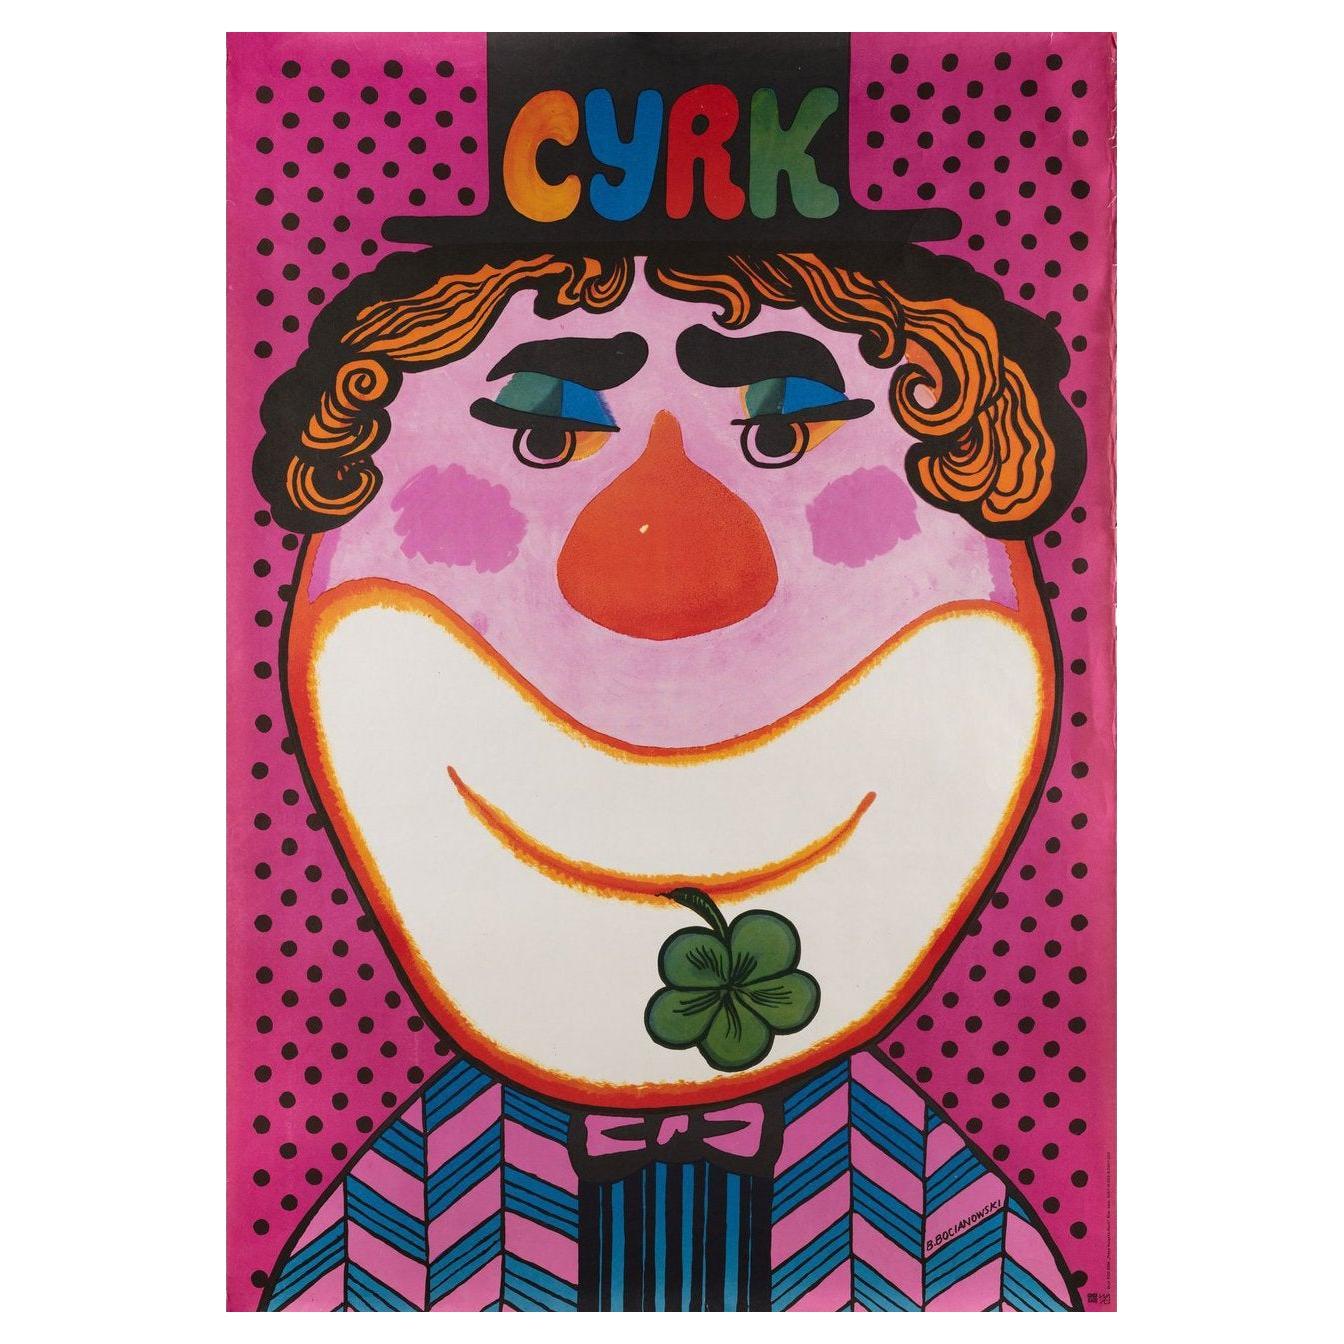 Cyrk 1973 Polish B1 Poster For Sale